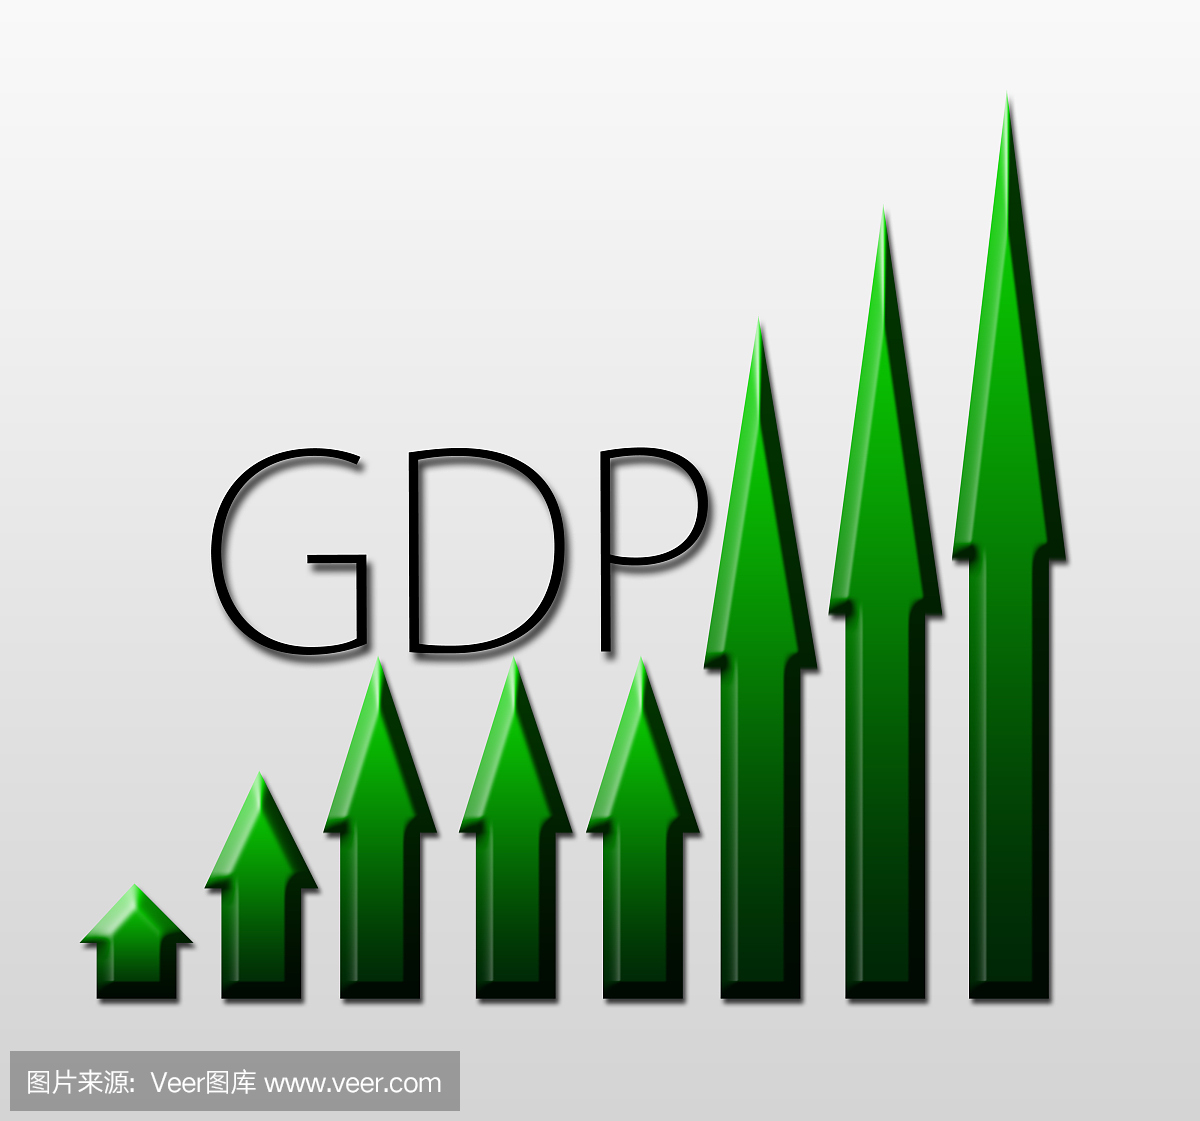 图表显示GDP增长,宏观经济指标概念